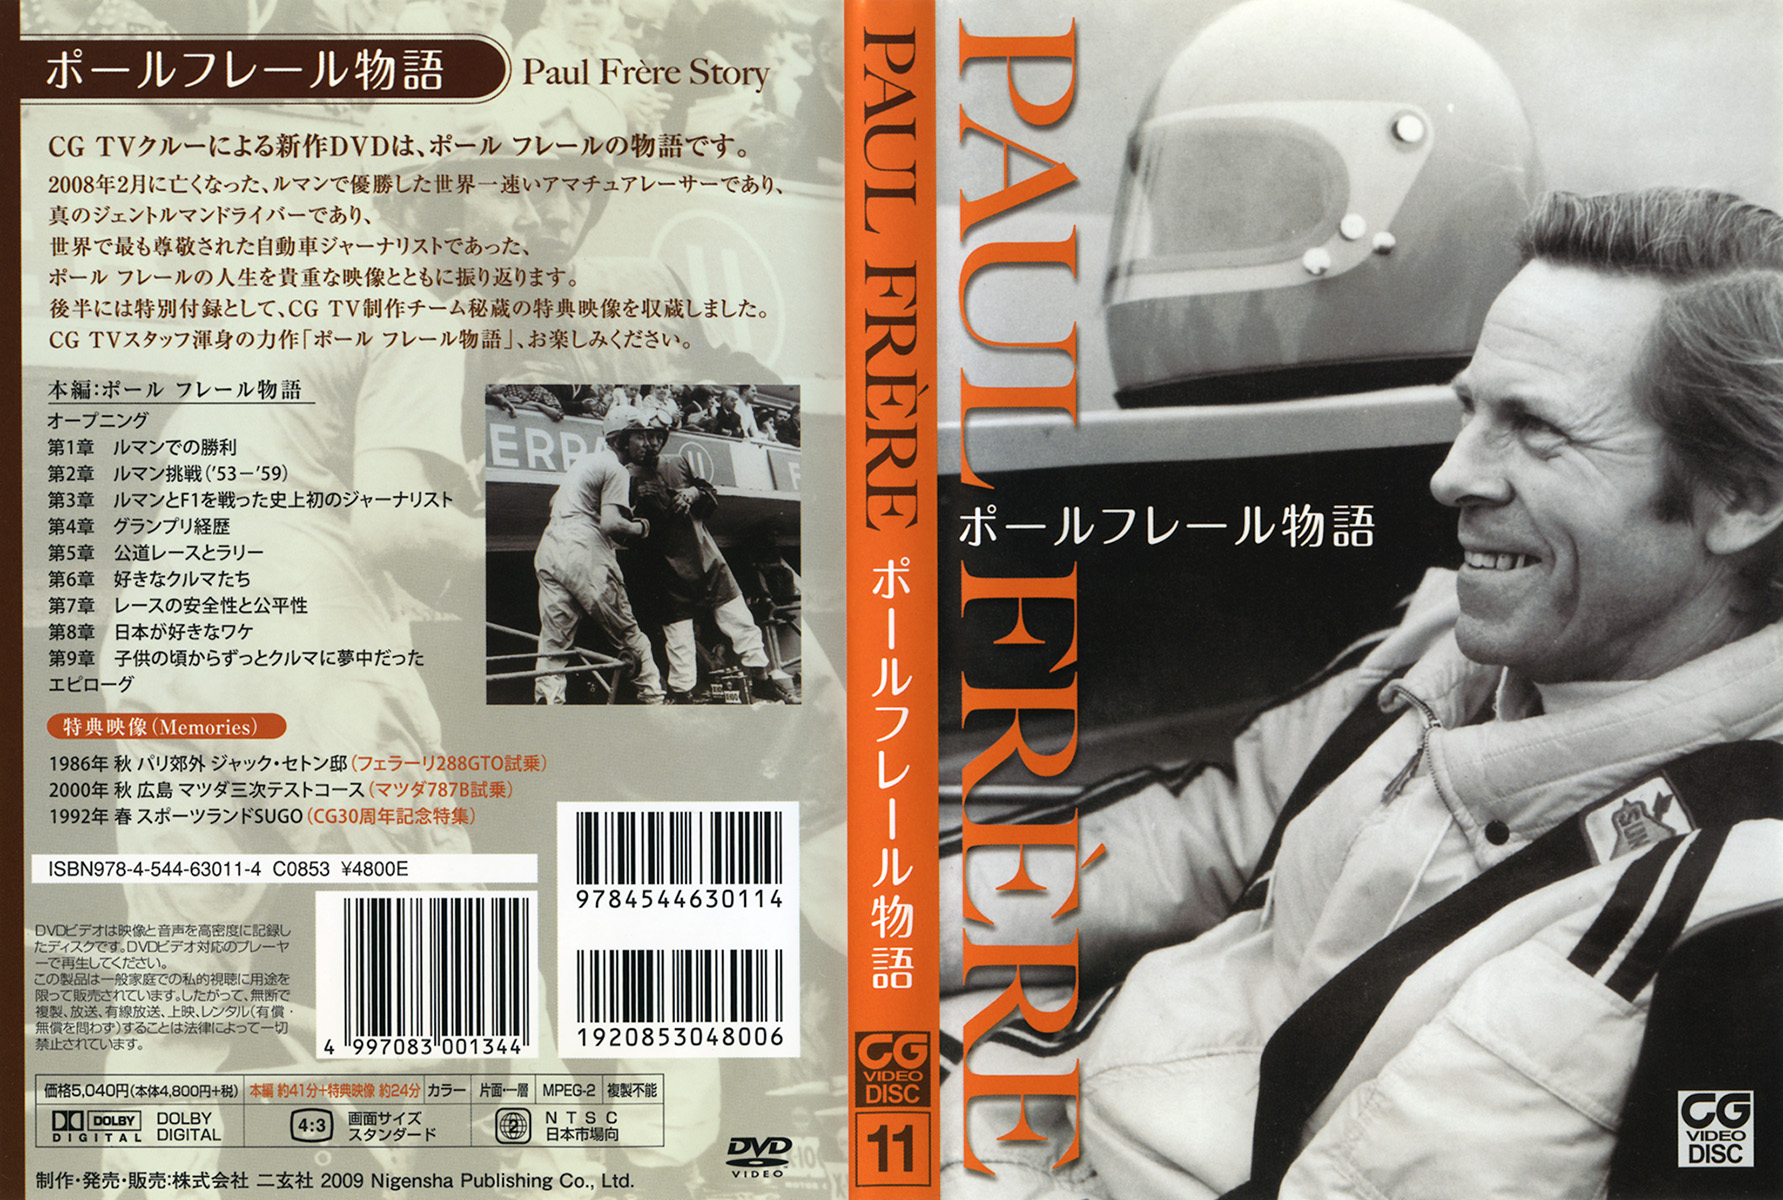 DVD］ポール フレール物語 - 株式会社二玄社